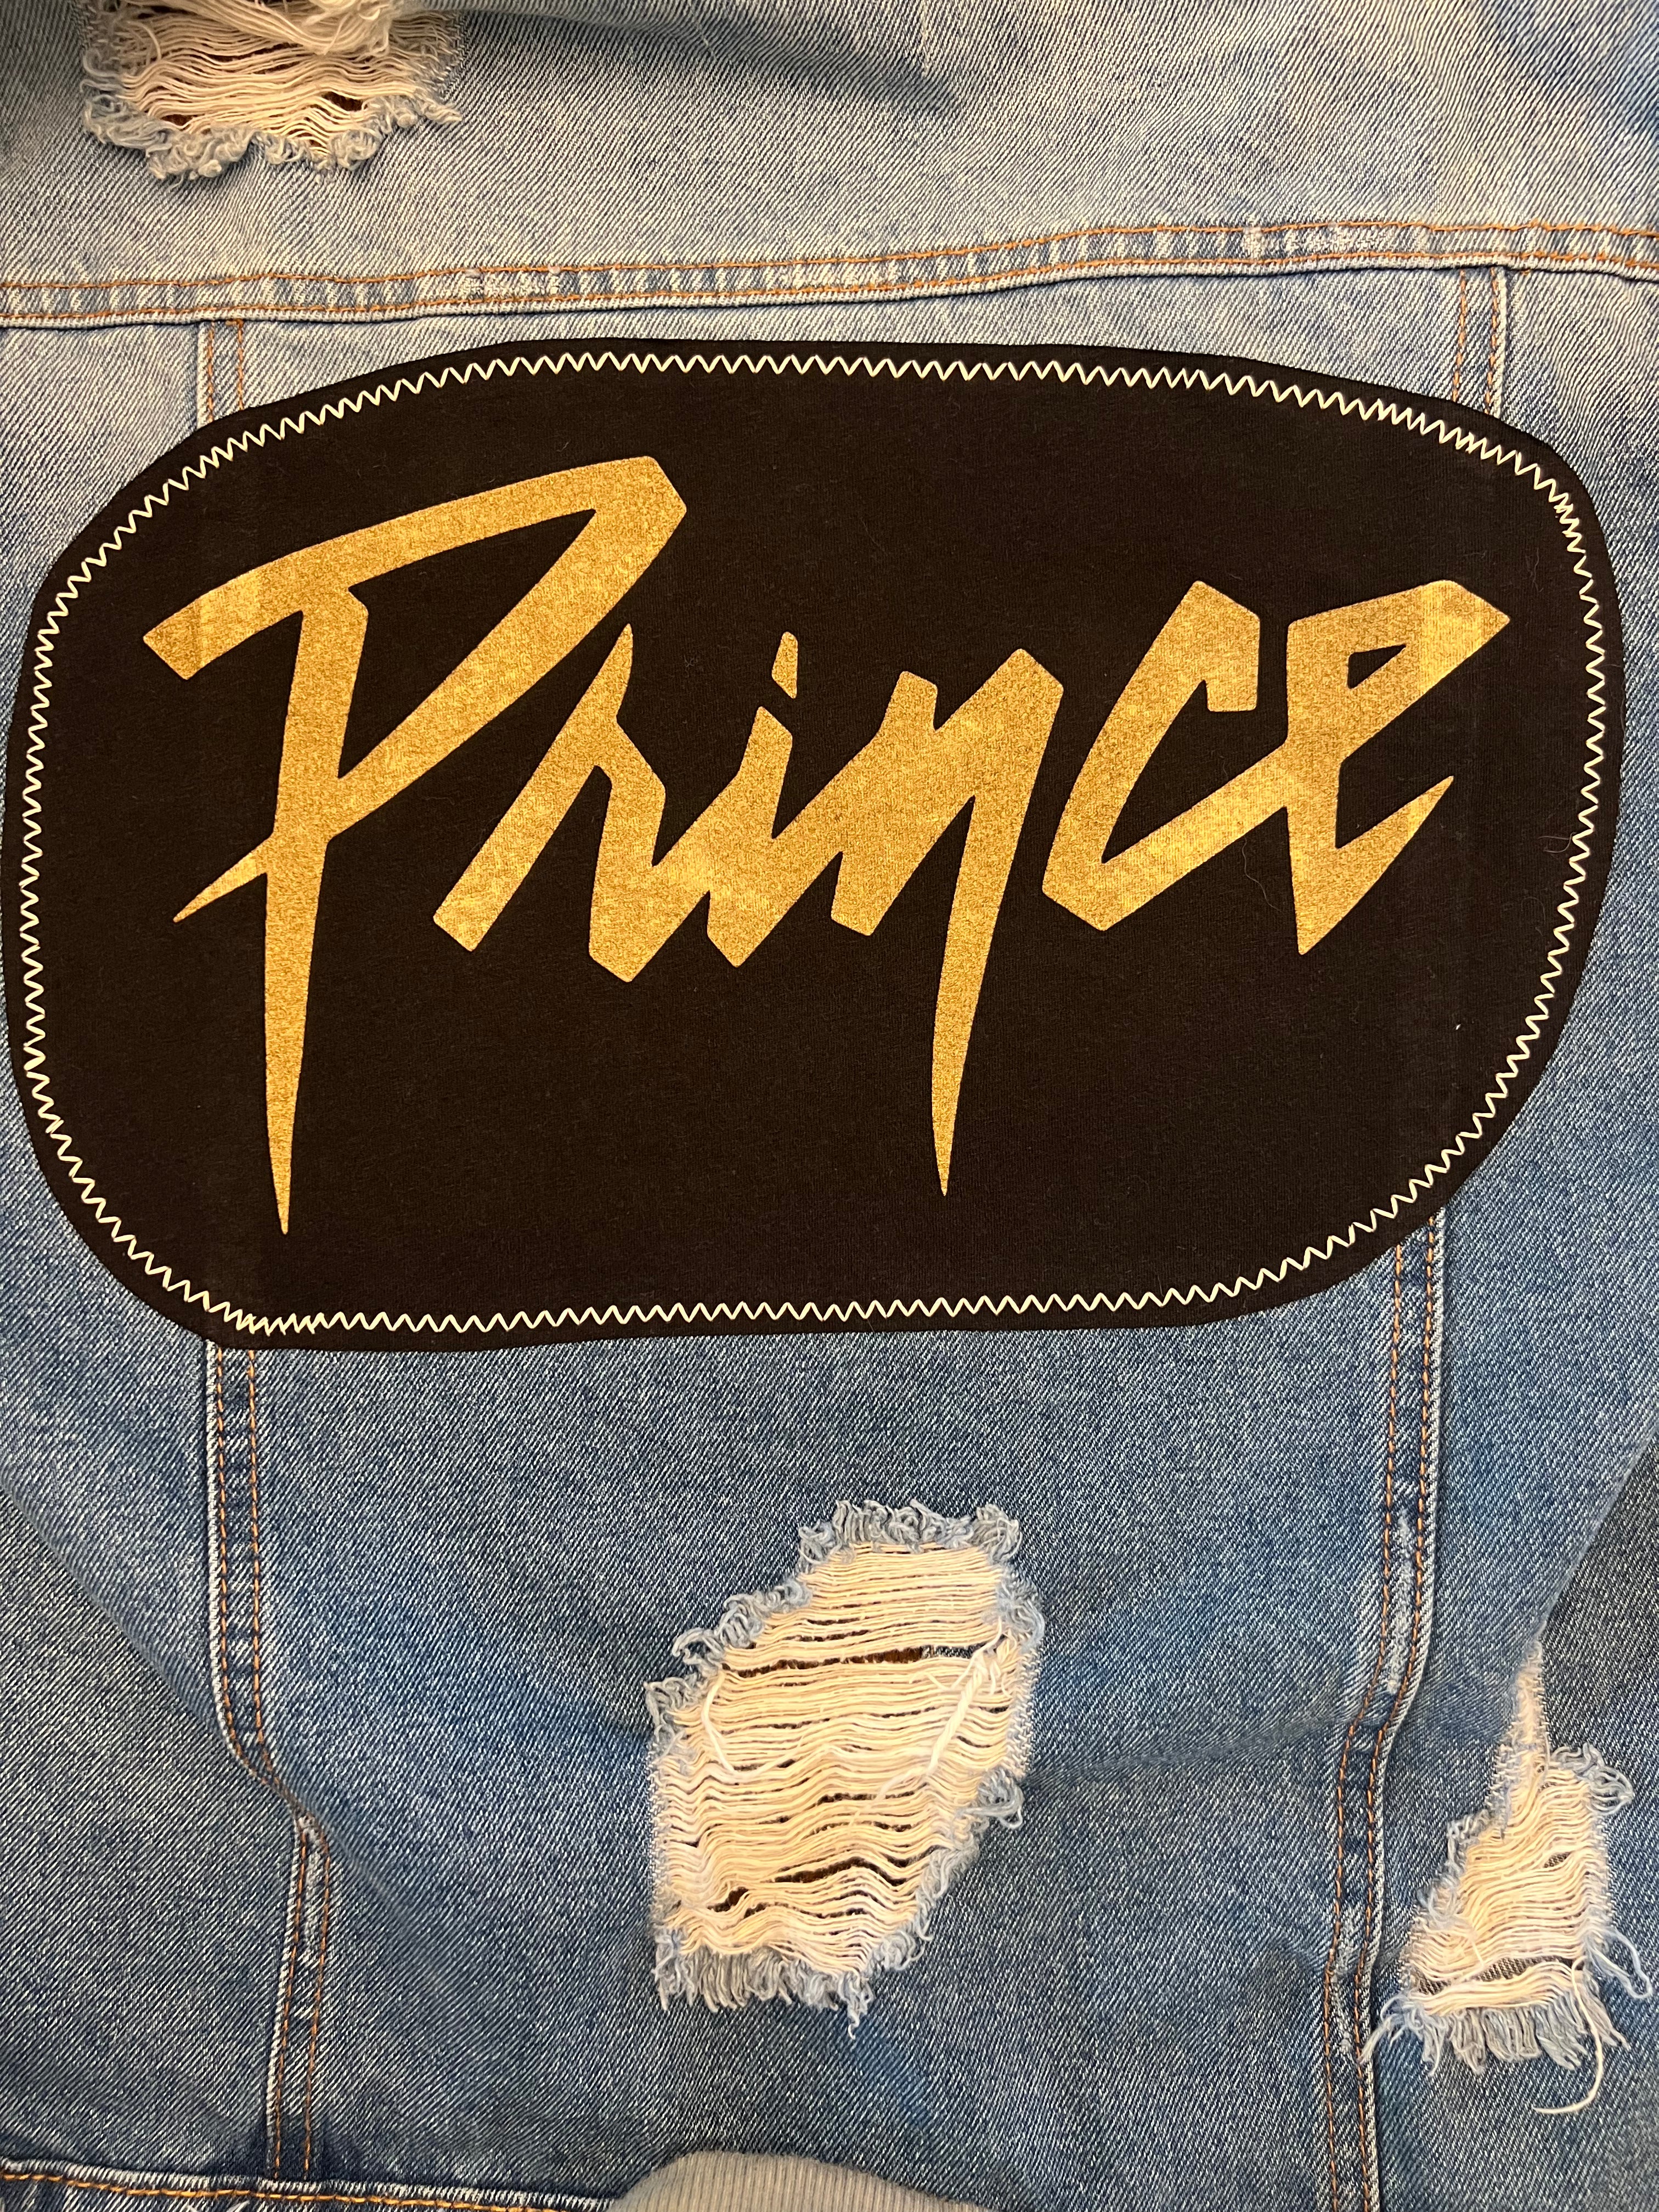 Prince 1999 (Women's - Size M)